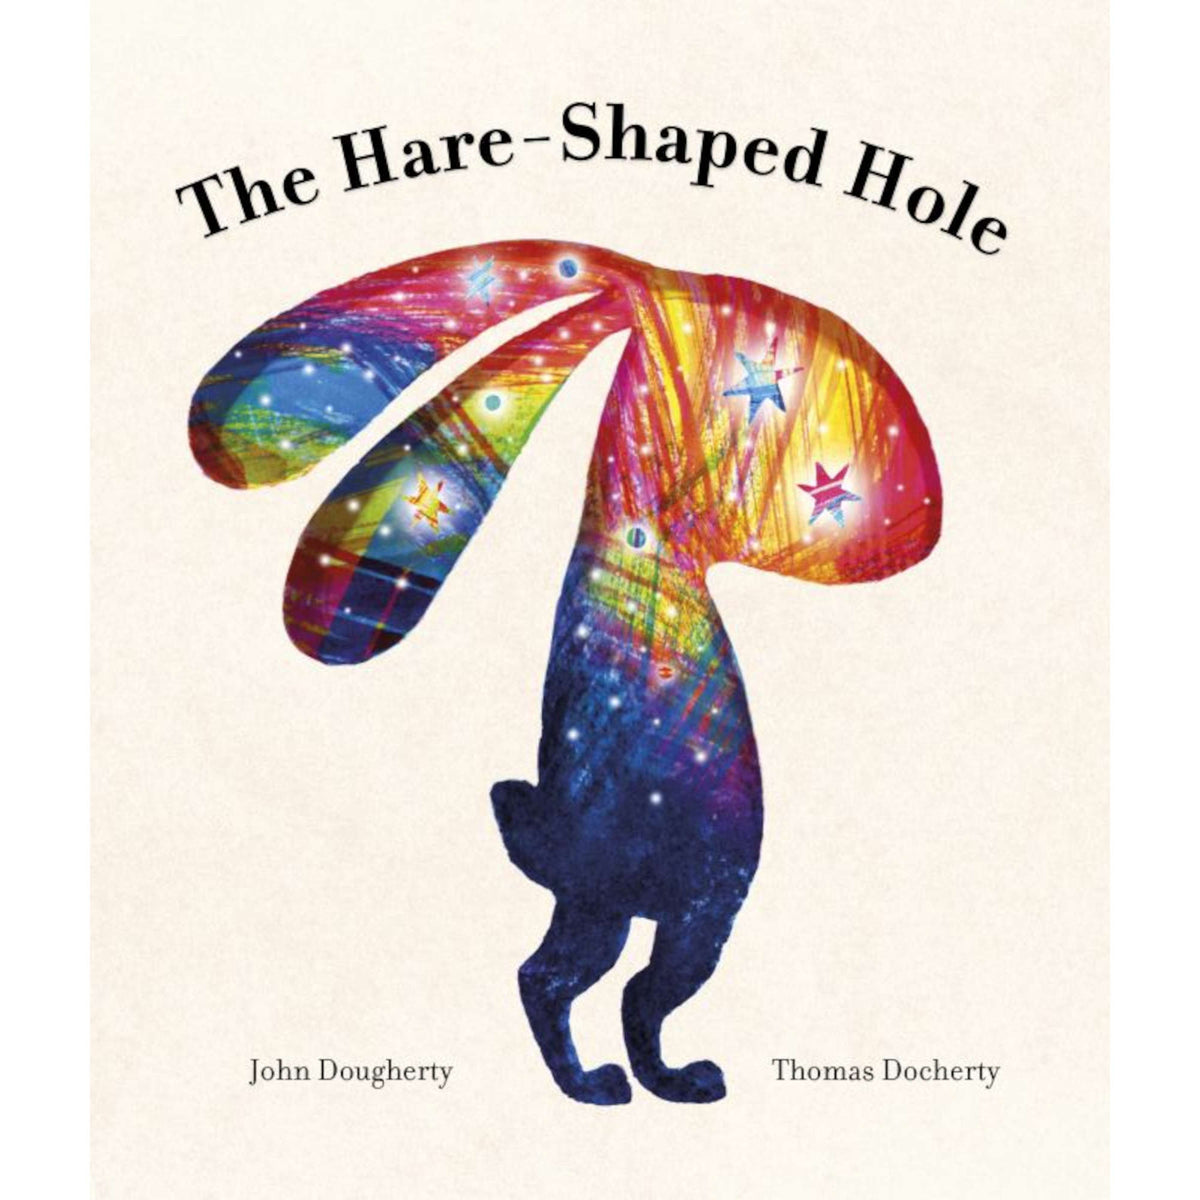 The Hare-Shaped Hole